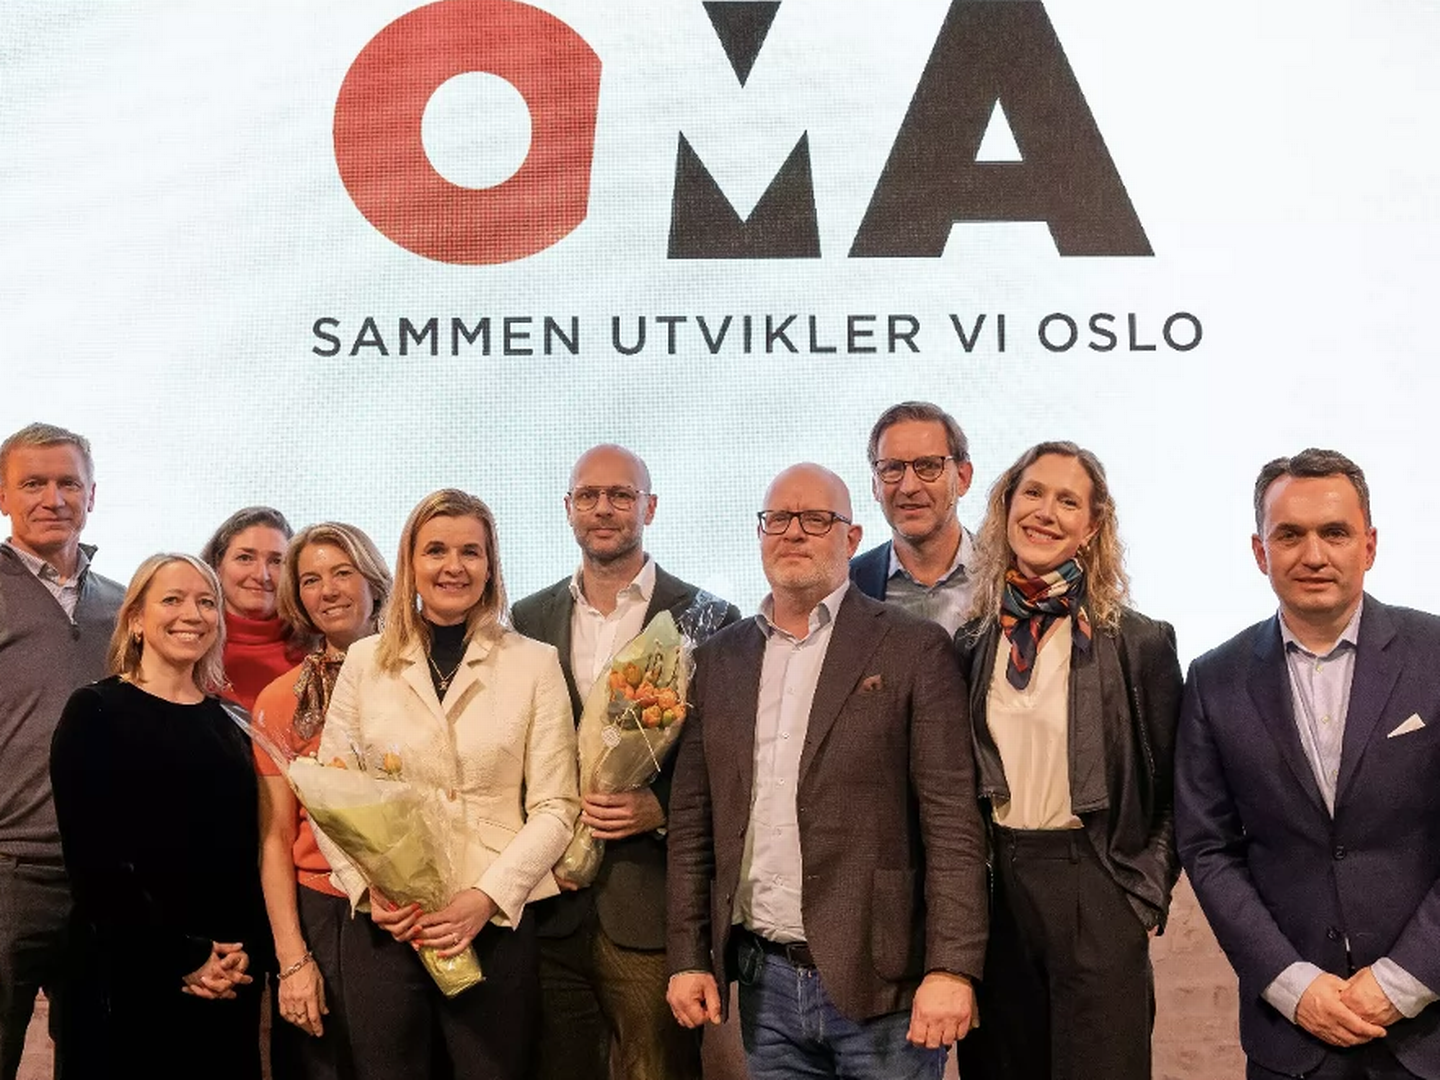 SAMMENSATT: Her er styremedlemmene til Oslo Metropolitan Area (Oma). Valgkomitéen har søkt en balanse mellom kontinuitet og fornyelse for å sette sammen det nye styret. I tillegg har mangfold blitt vektlagt, både i type bransjer, erfaring, faglig bakgrunn, kjønn og selskaper de enkelte representerer. | Foto: Torleif Kvinnesland